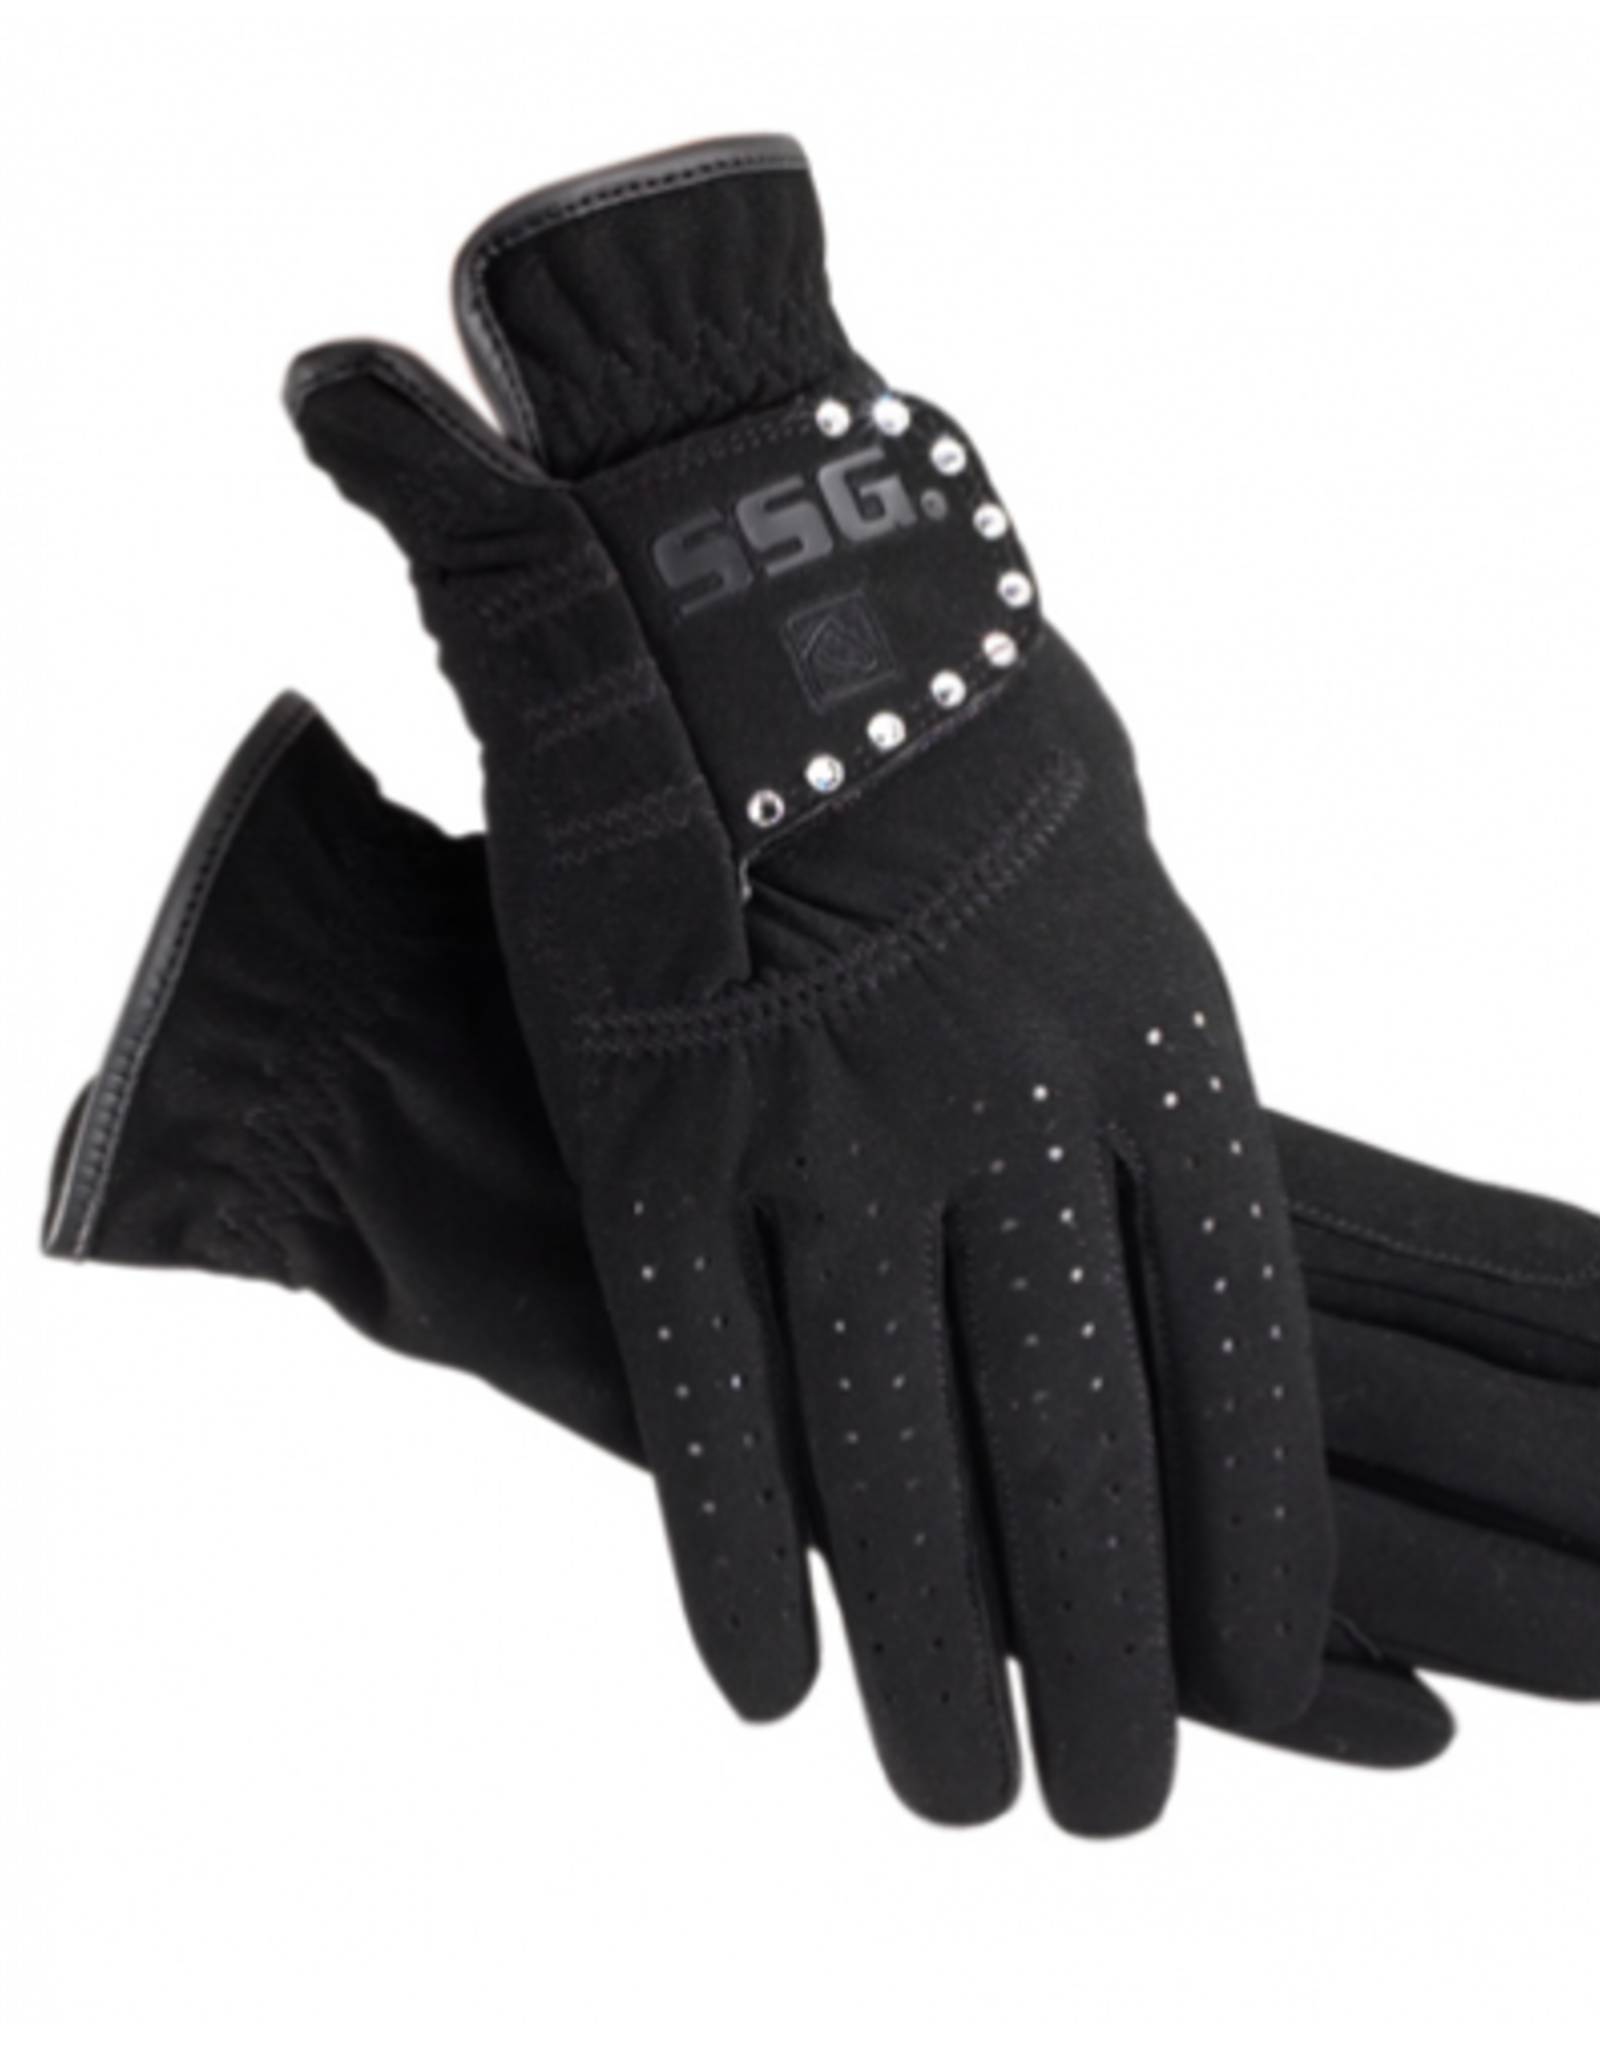 SSG Grand Prix Bling Glove